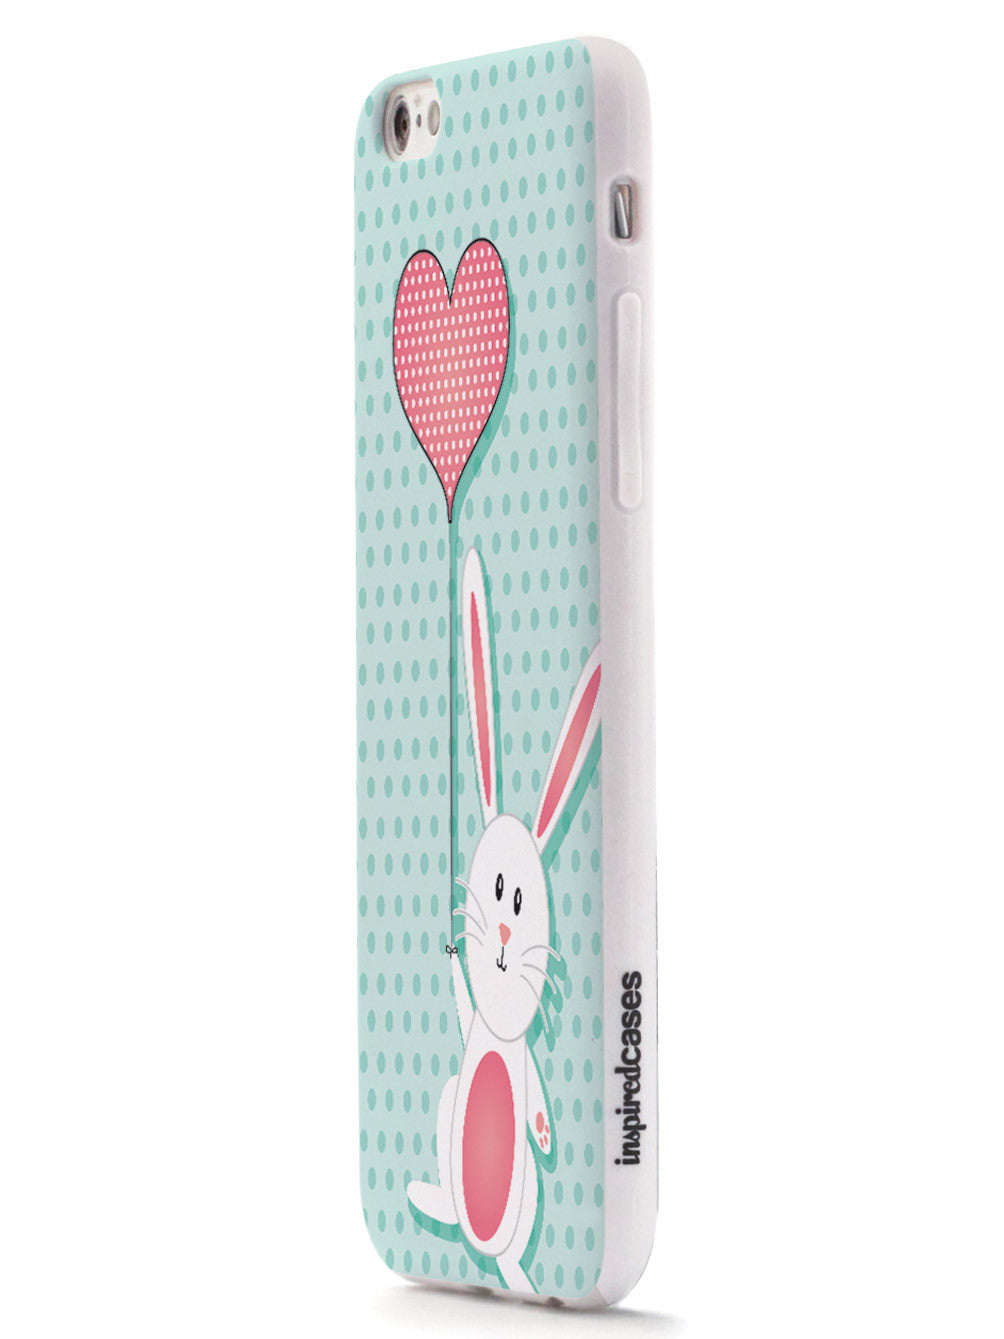 Adorable Bunny with Heart Balloon Case